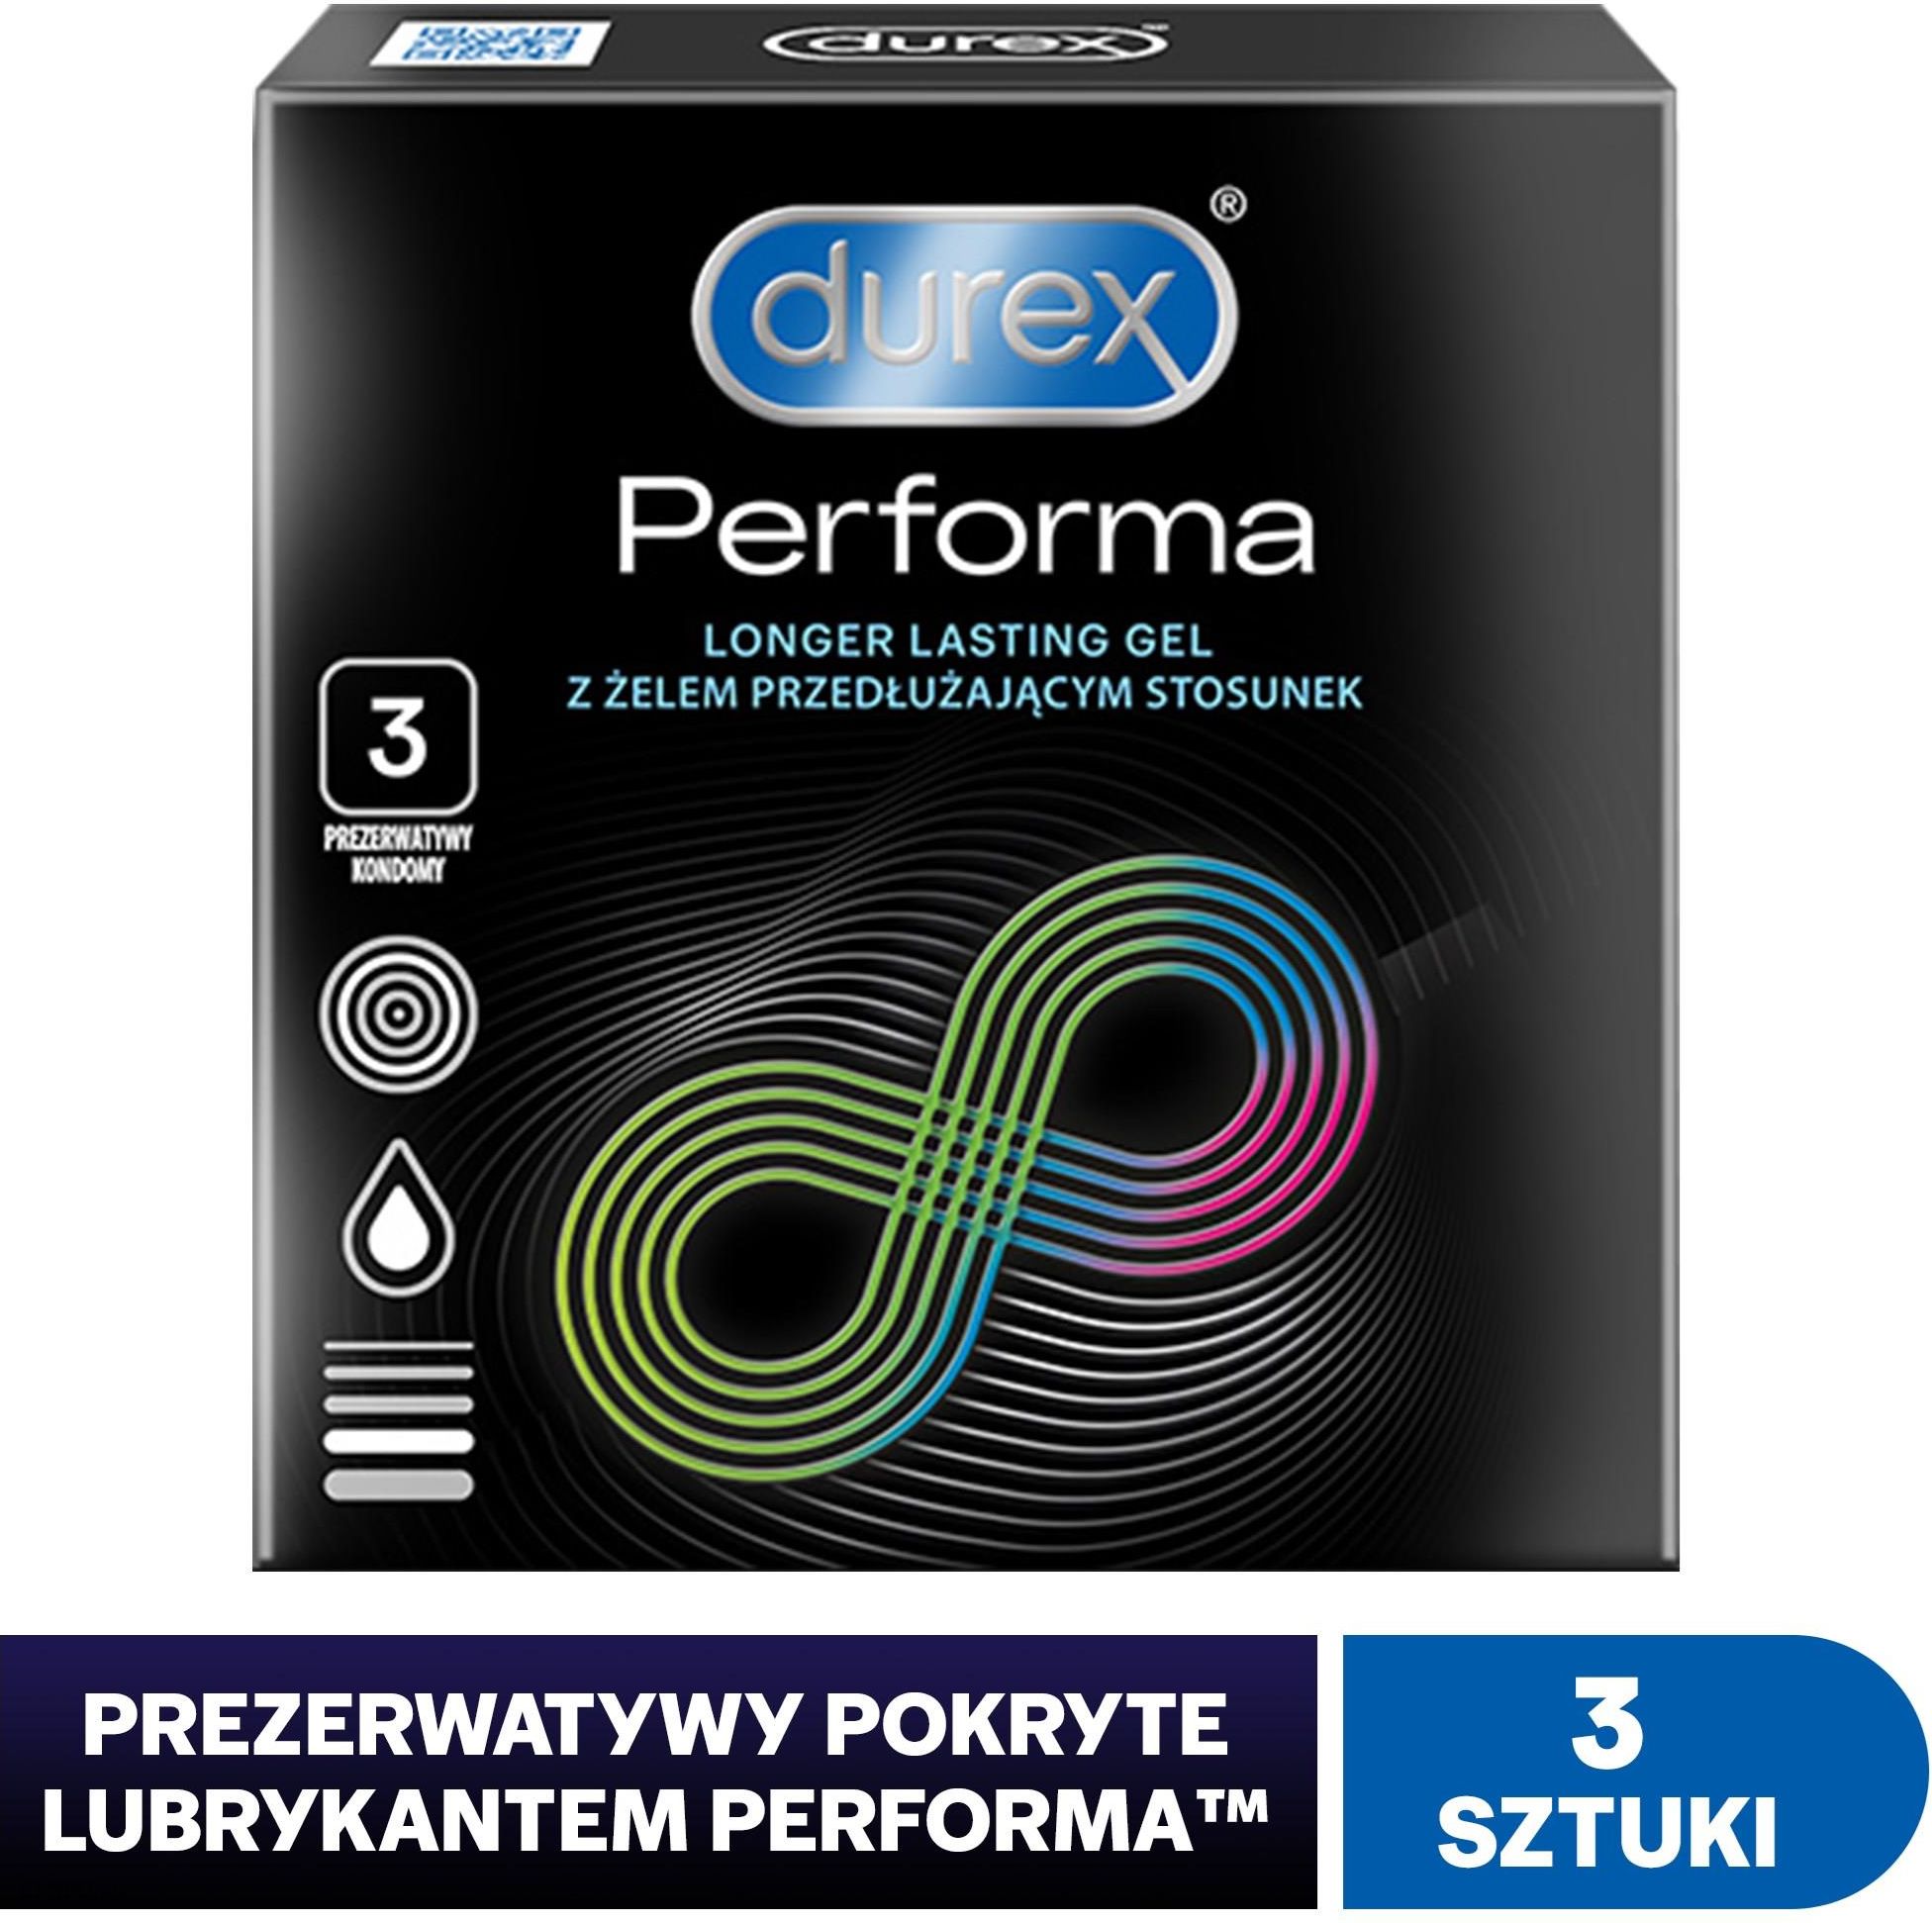 Durex prezerwatywy Performa 3 szt.